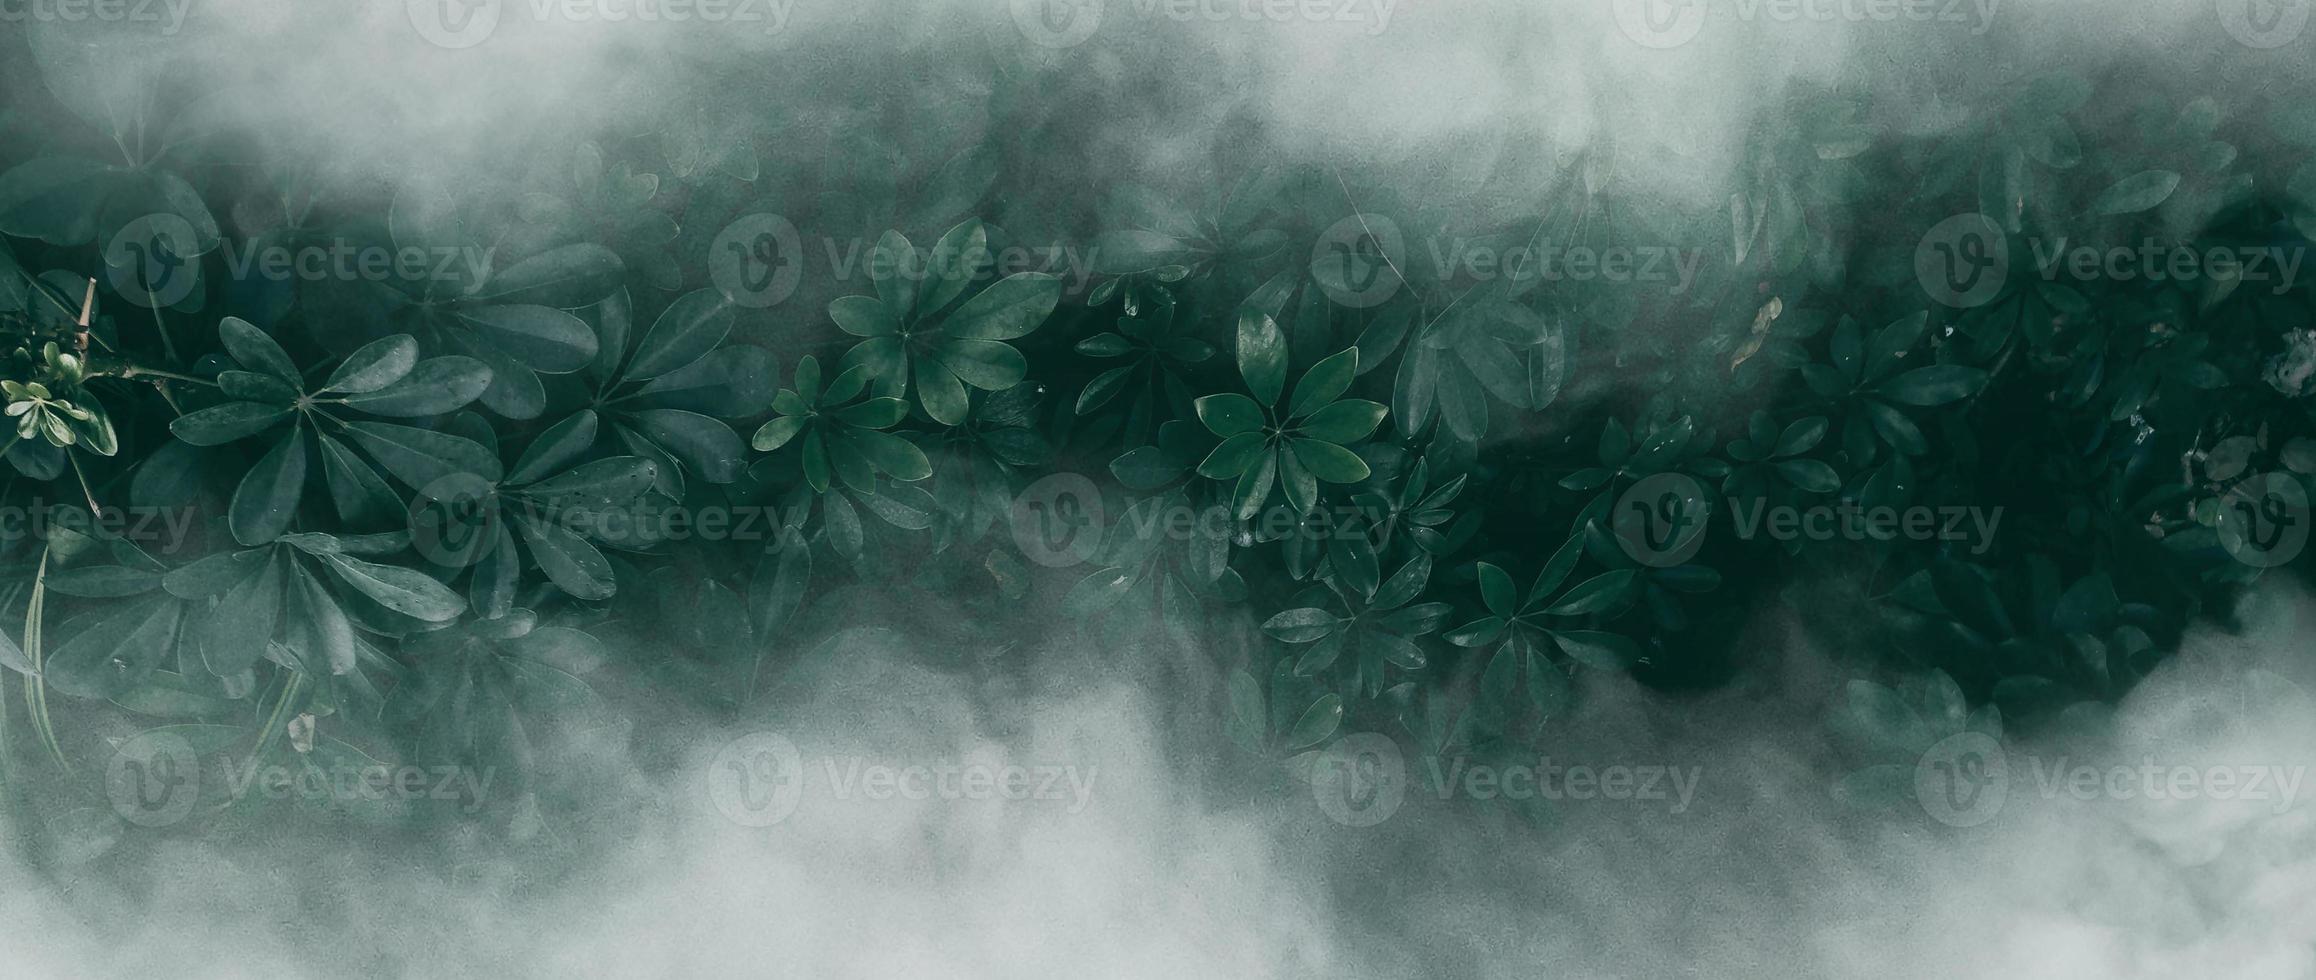 jardín vertical con hoja verde tropical con niebla y lluvia, tono oscuro foto